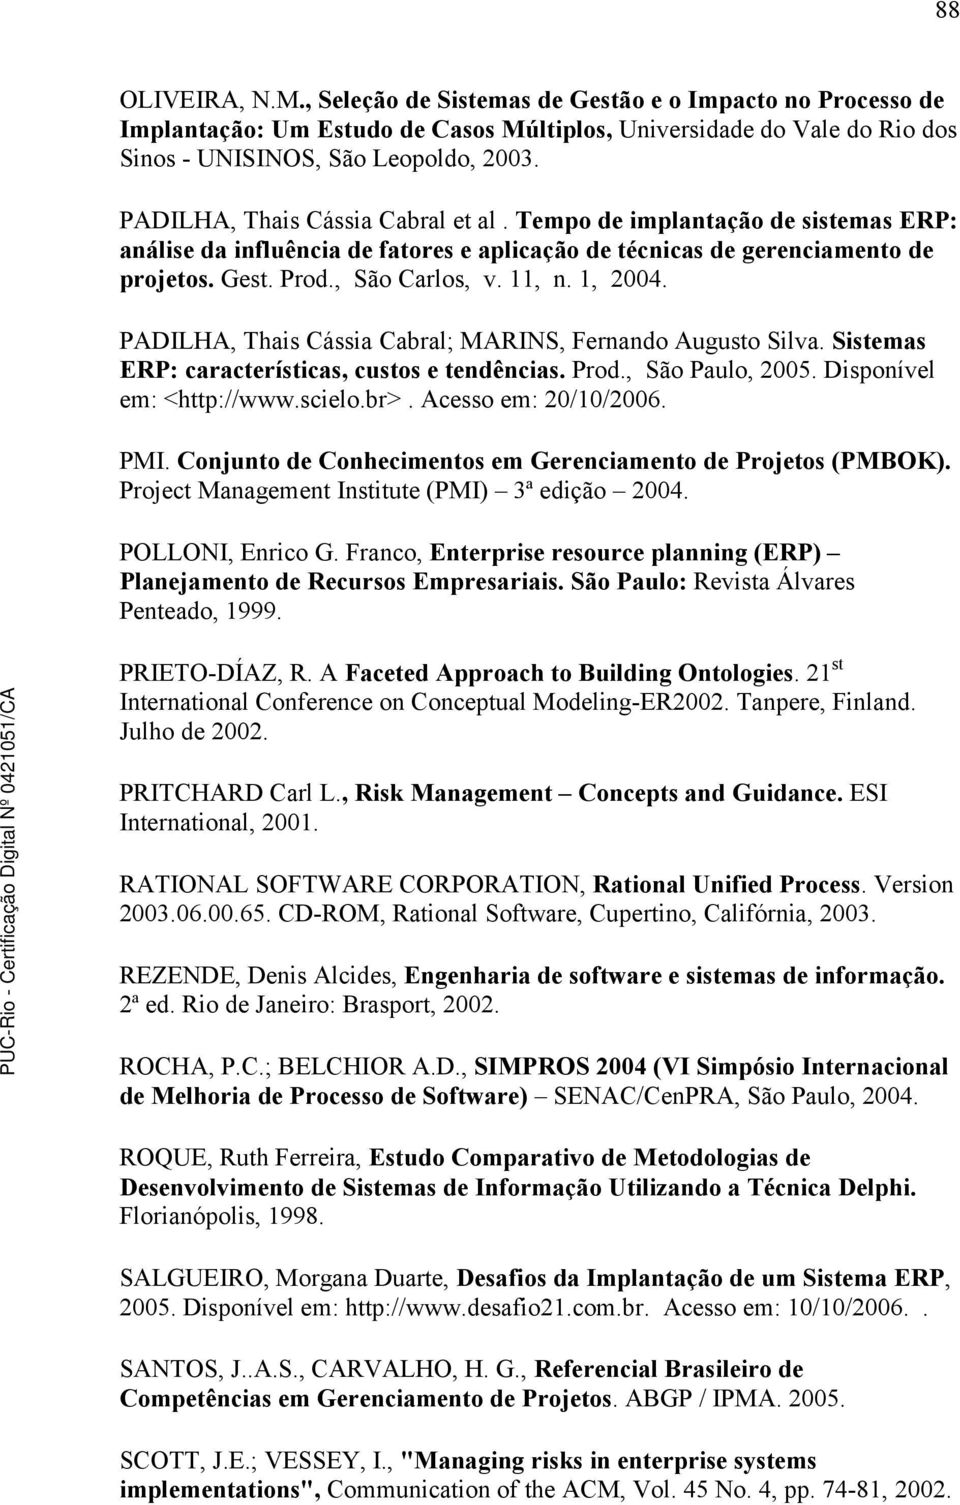 1, 2004. PADILHA, Thais Cássia Cabral; MARINS, Fernando Augusto Silva. Sistemas ERP: características, custos e tendências. Prod., São Paulo, 2005. Disponível em: <http://www.scielo.br>.